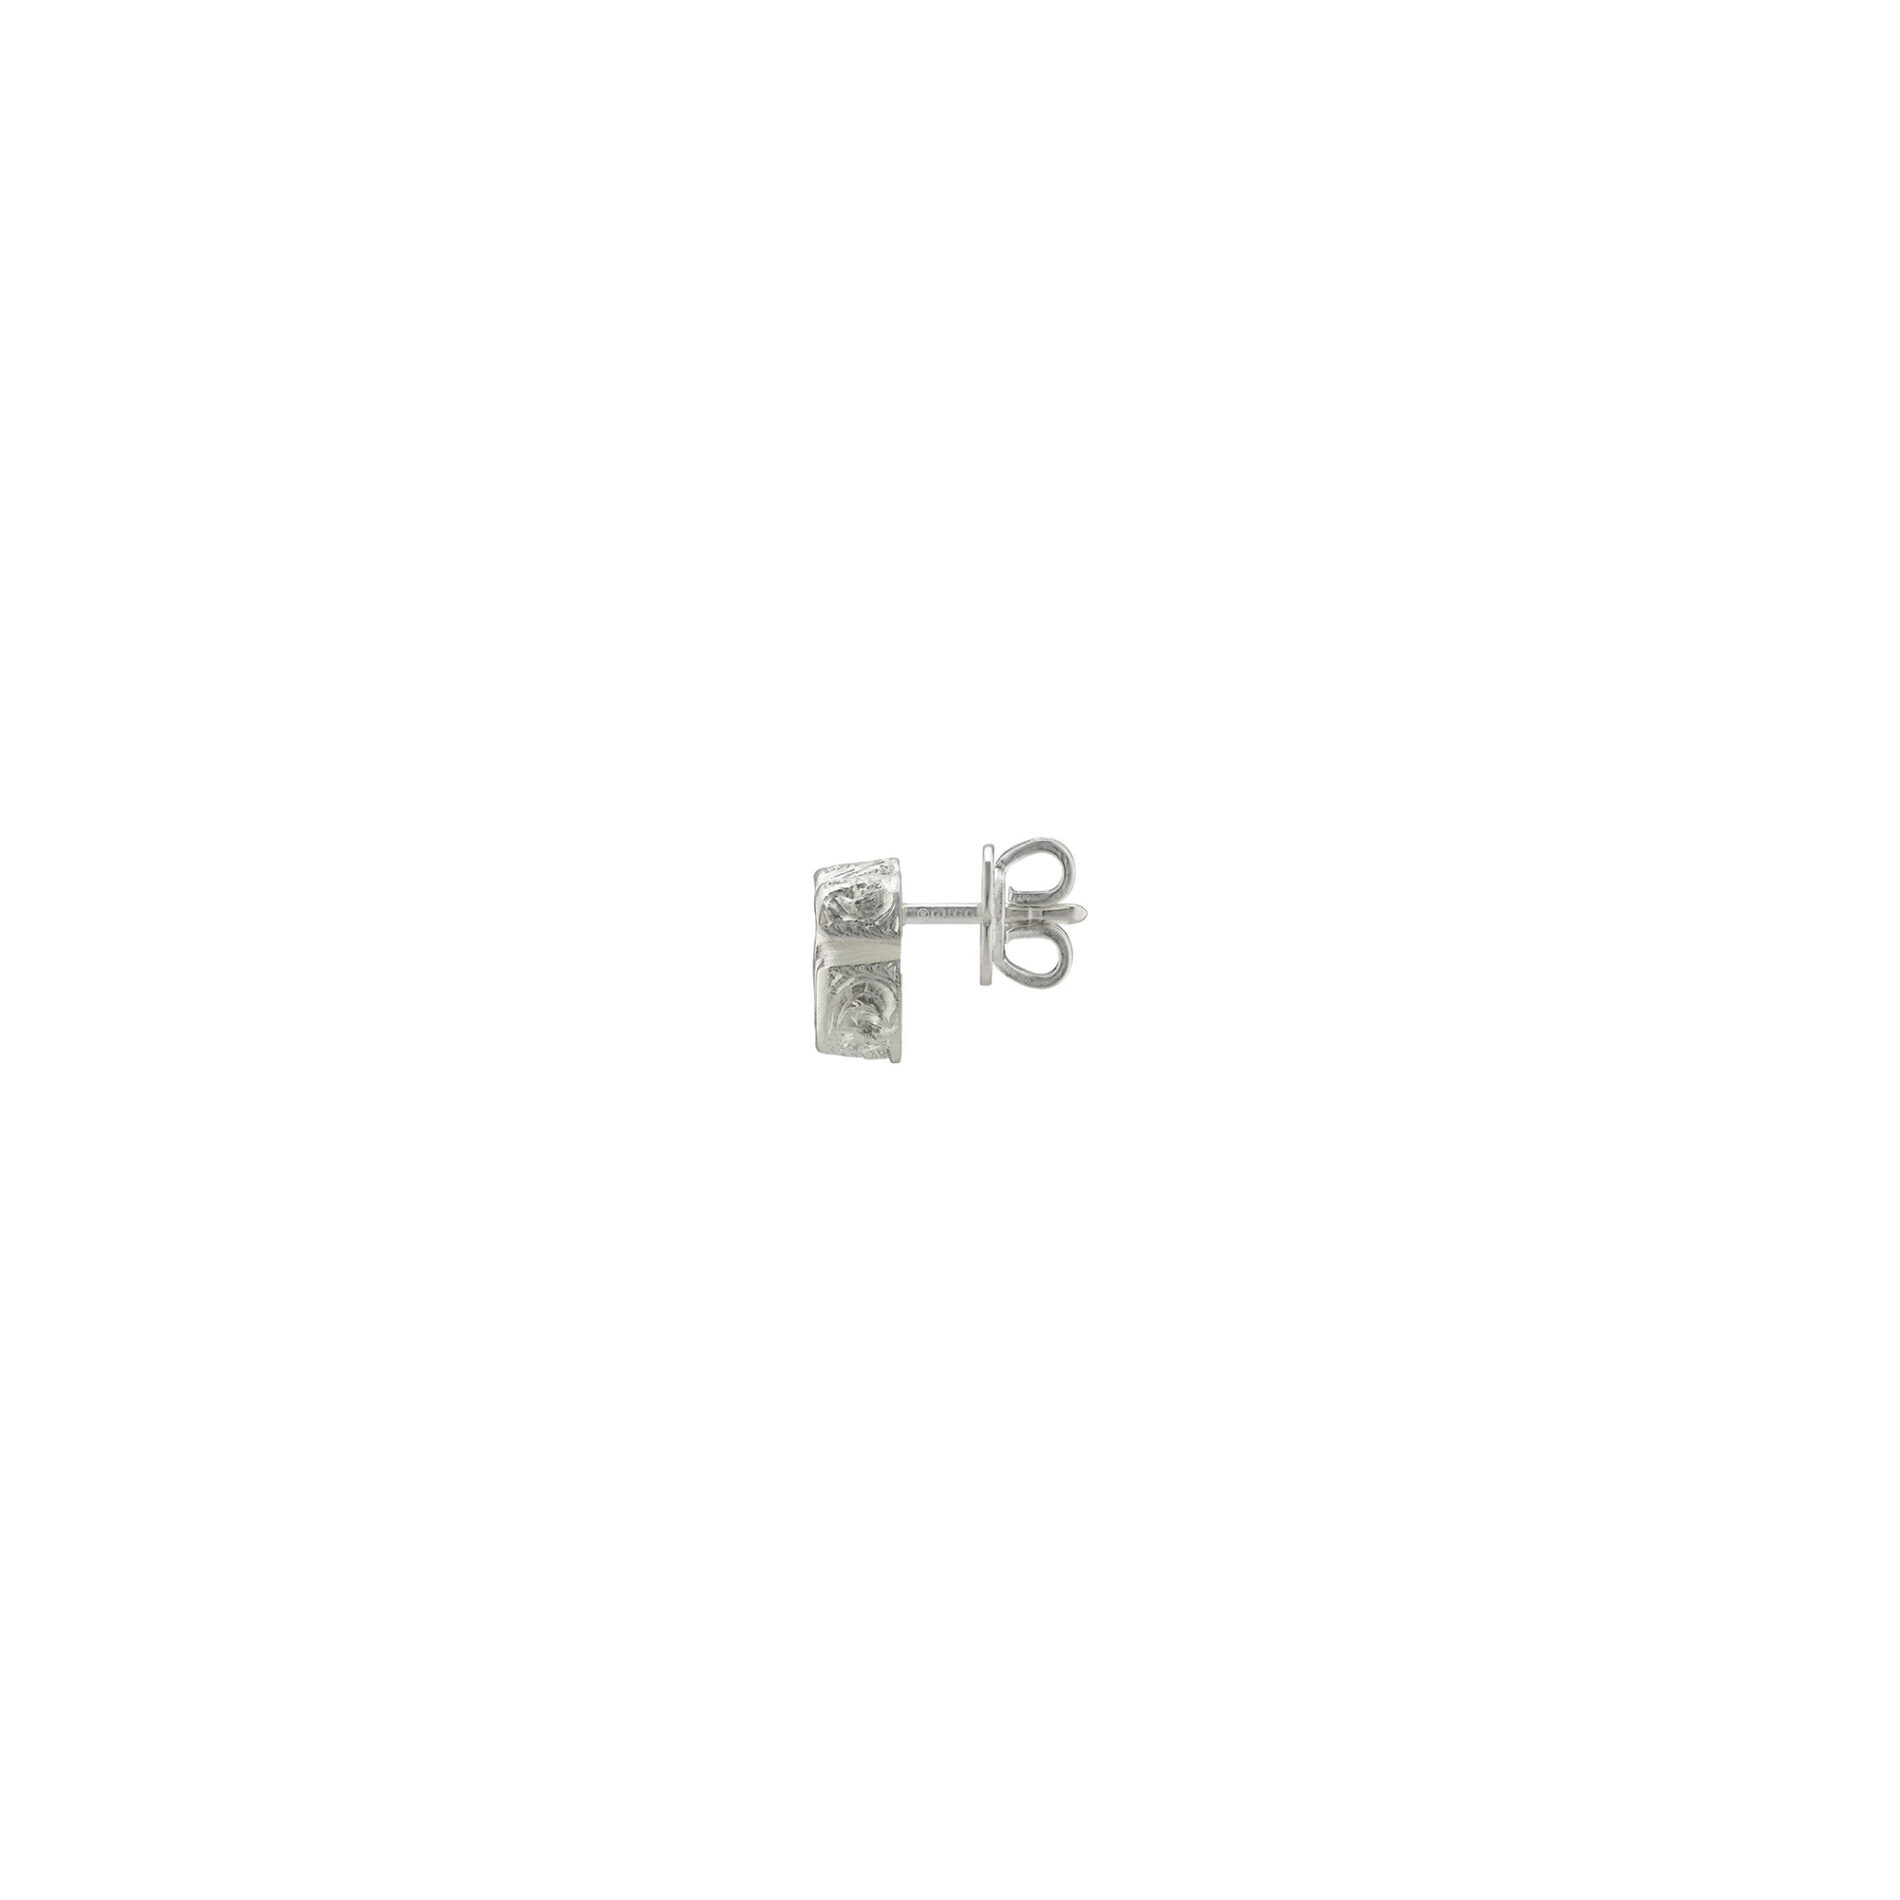 Gucci GG Marmont YBD770758001 - Gioielleria Casavola di Noci - orecchini a bottone in argento 925 con doppia G - immagine laterale